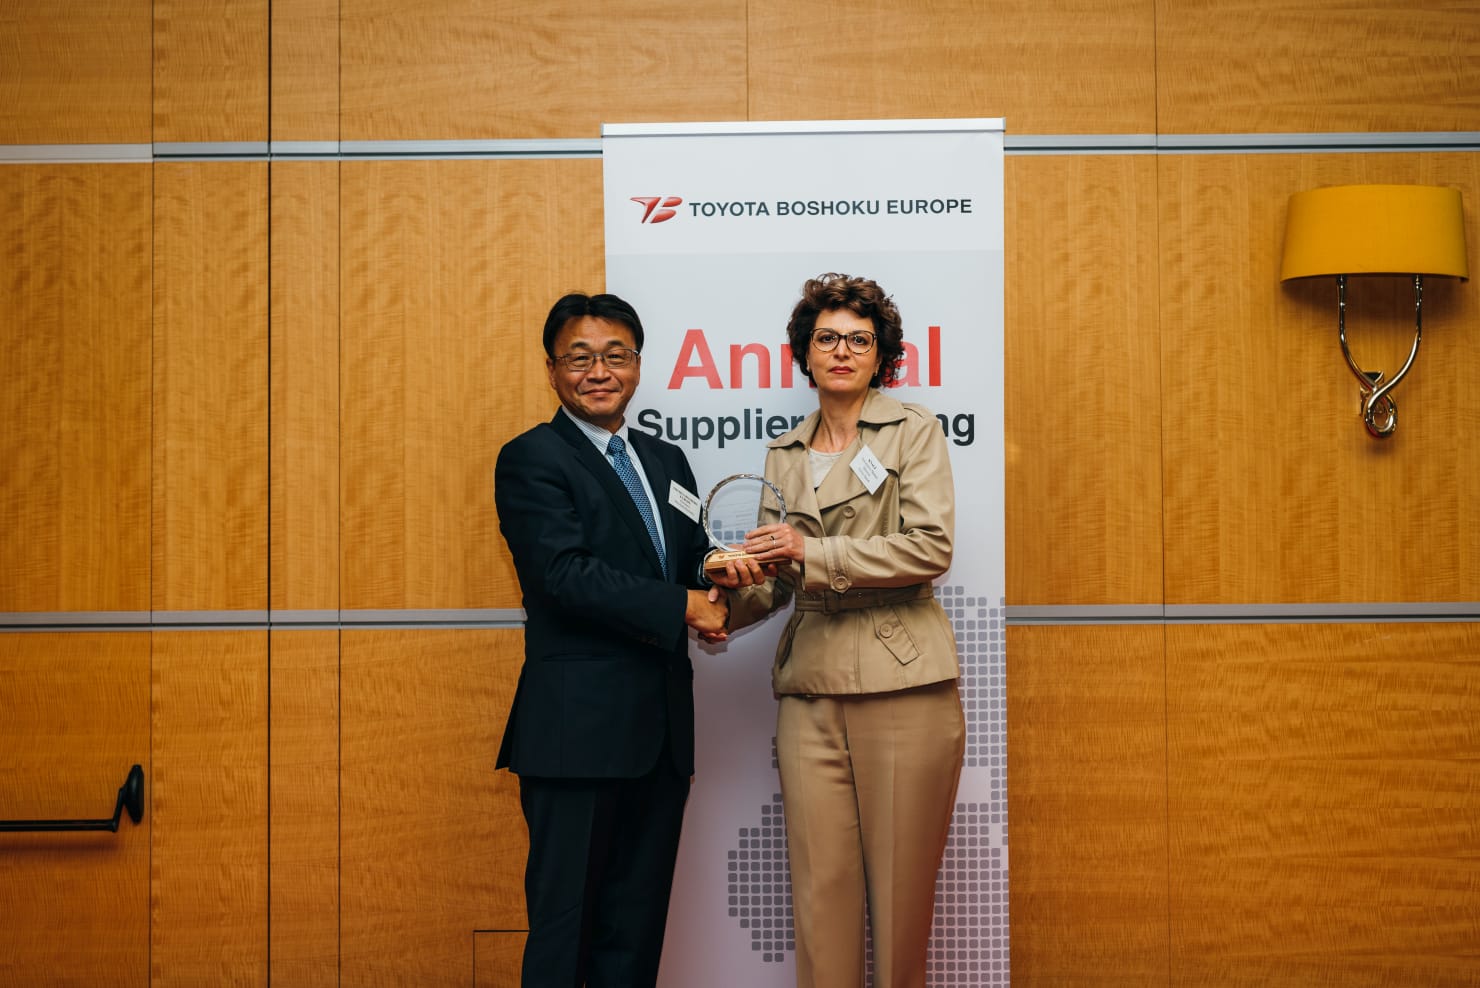 Церемония награждения лучших европейских поставщиков компании Toyota Boshoku в Завентеме.
